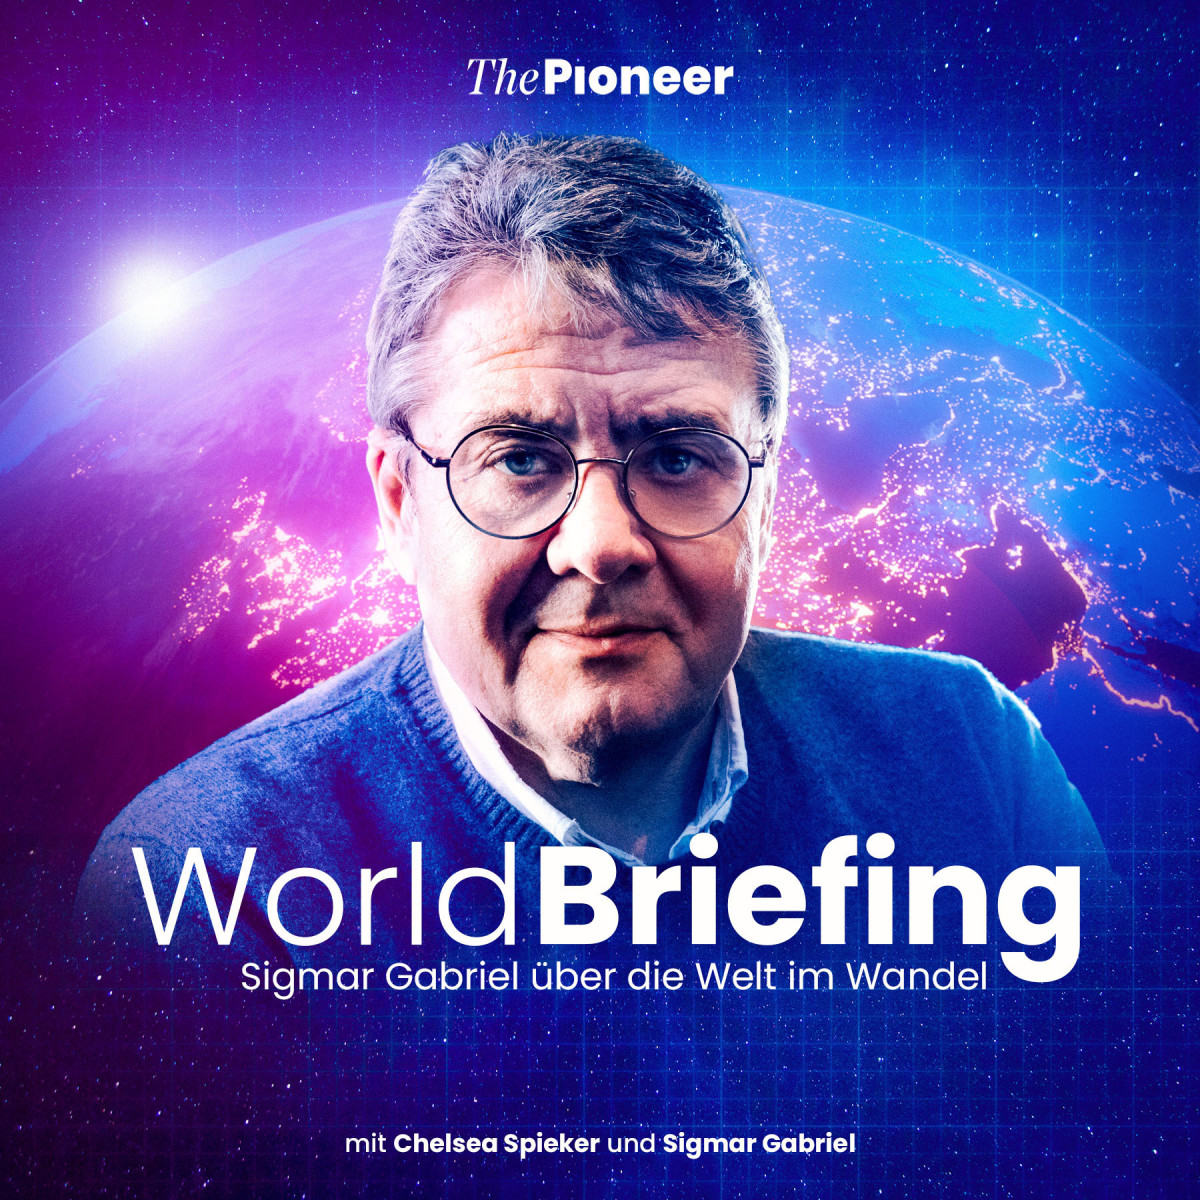 World Briefing Podcast Cover mit Brand Link zum World Briefing